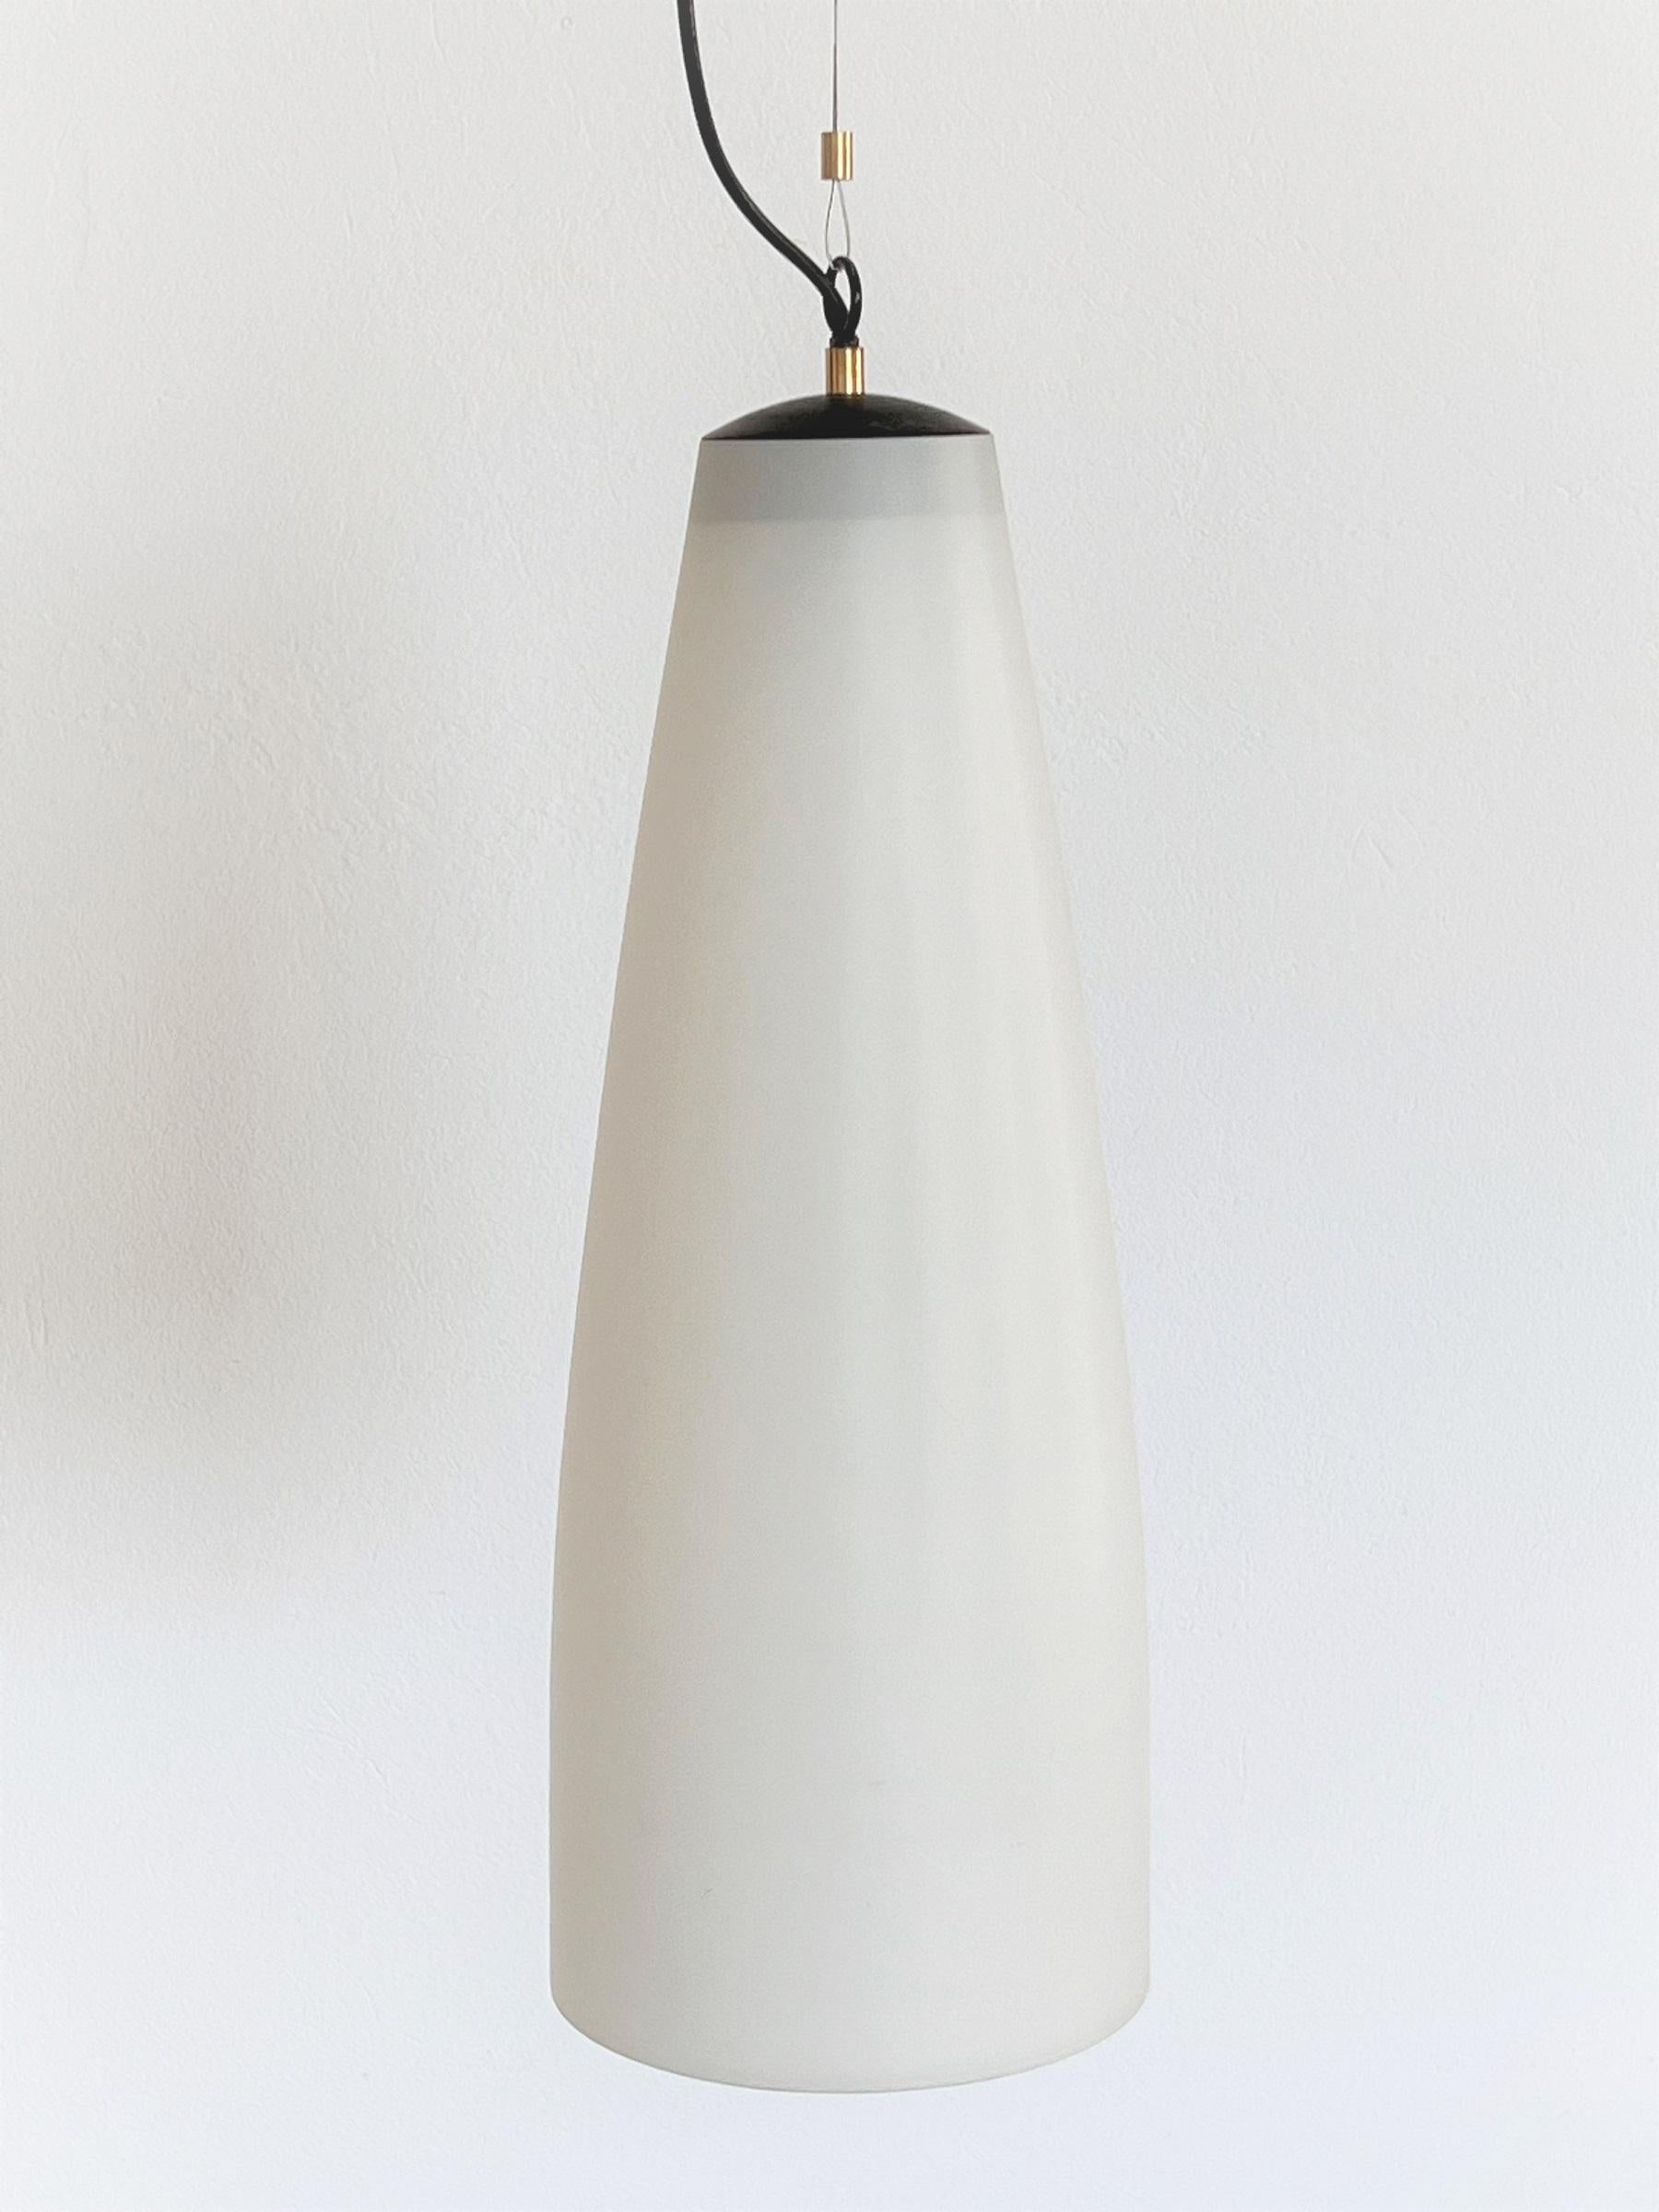 Italian Midcentury Extra Long Pendant Light in Milky White Glass, 1970s For Sale 1